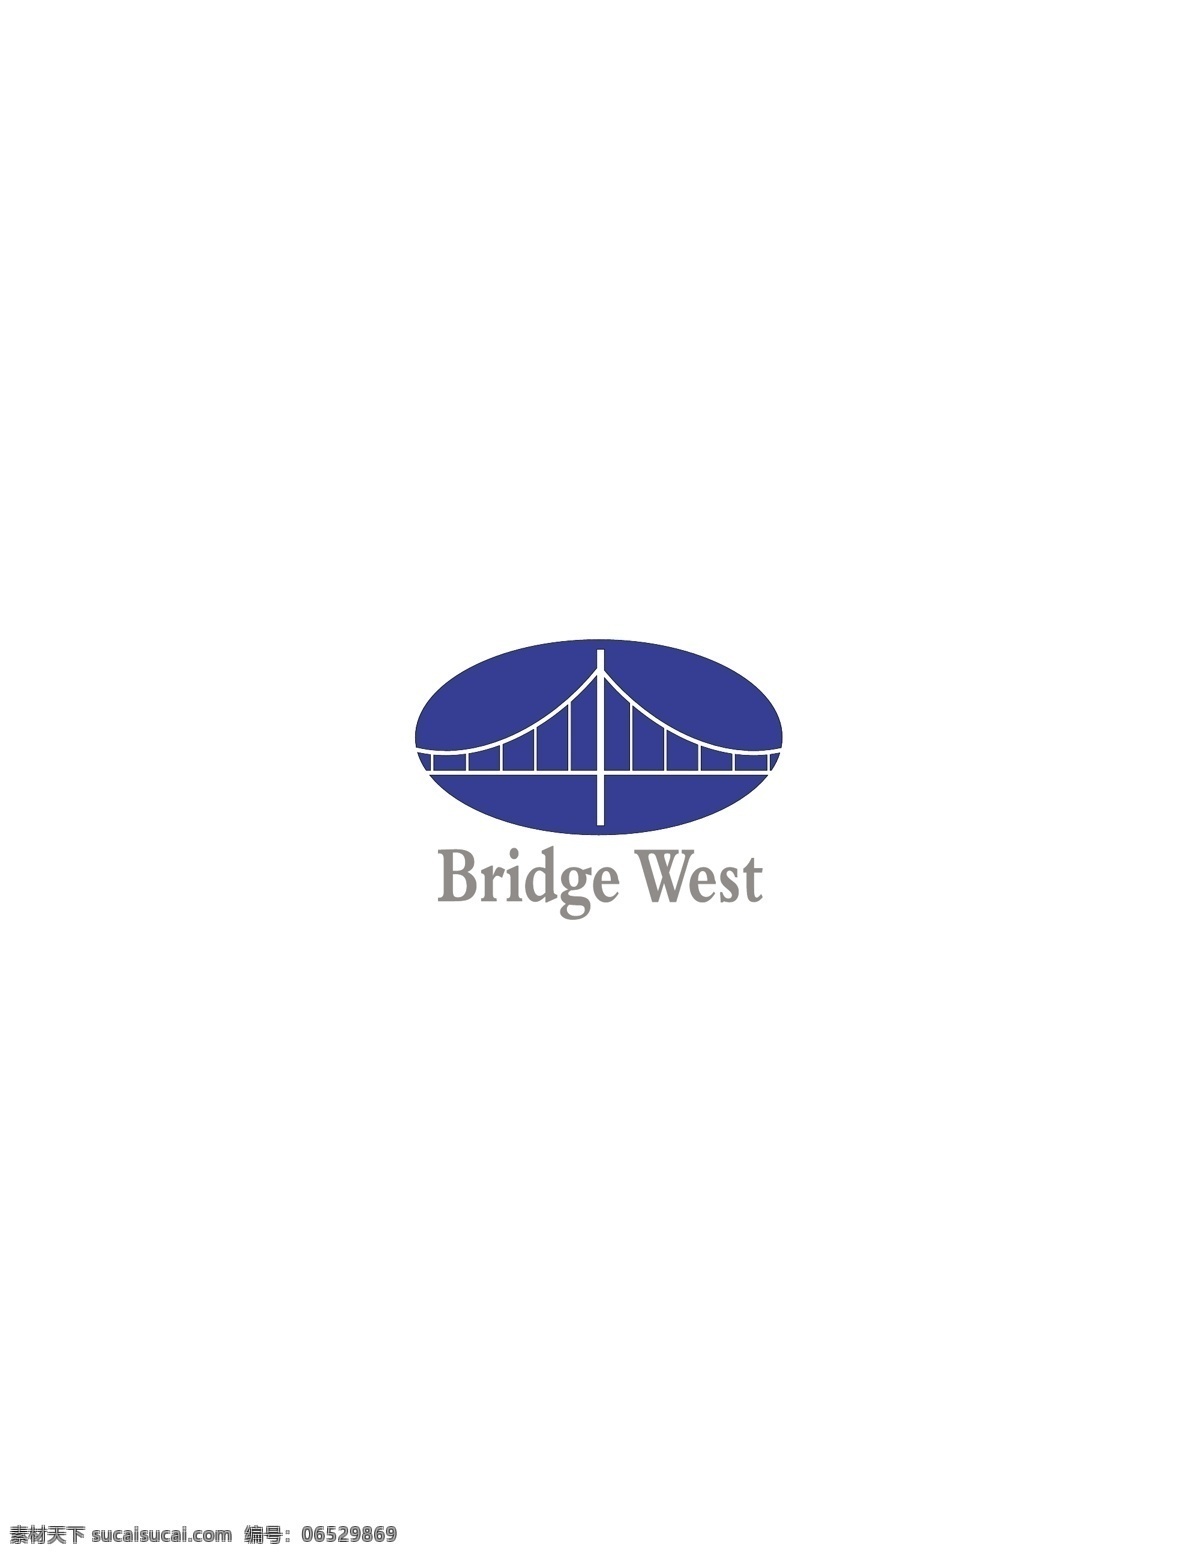 bridge west logo 设计欣赏 标志设计 欣赏 矢量下载 网页矢量 商业矢量 logo大全 红色